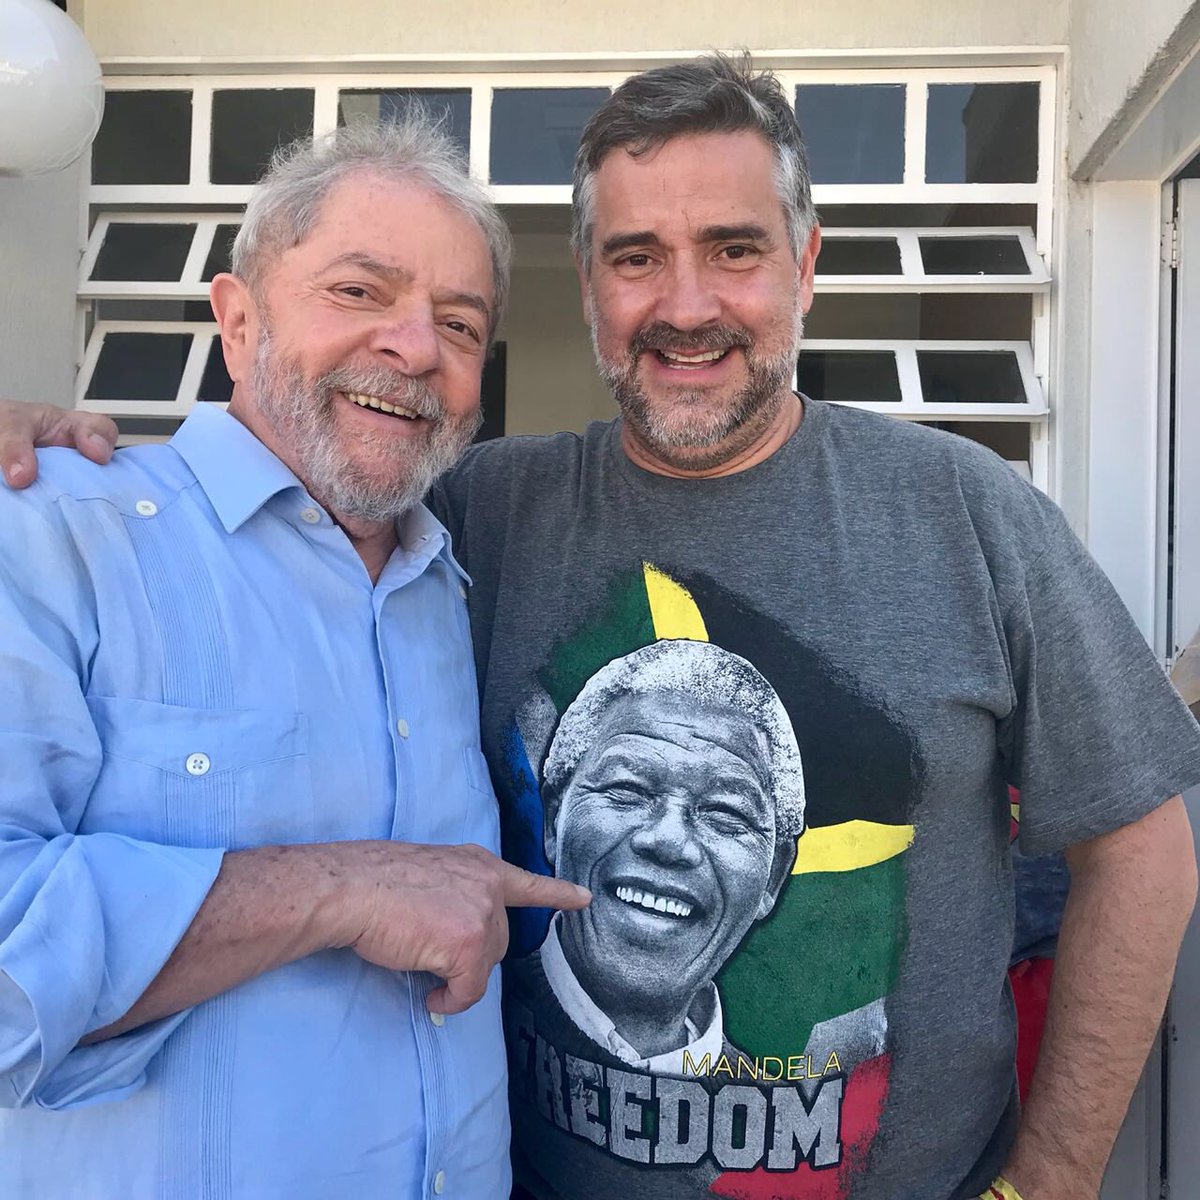 MANDELA VIVE, LULA LIVRE!

A prisão política de Lula completa
mais de 100 dias. Hoje, 100 anos do nascimento de Nelson Mandela !! #LulaLivre #MandelaVive !  🌶